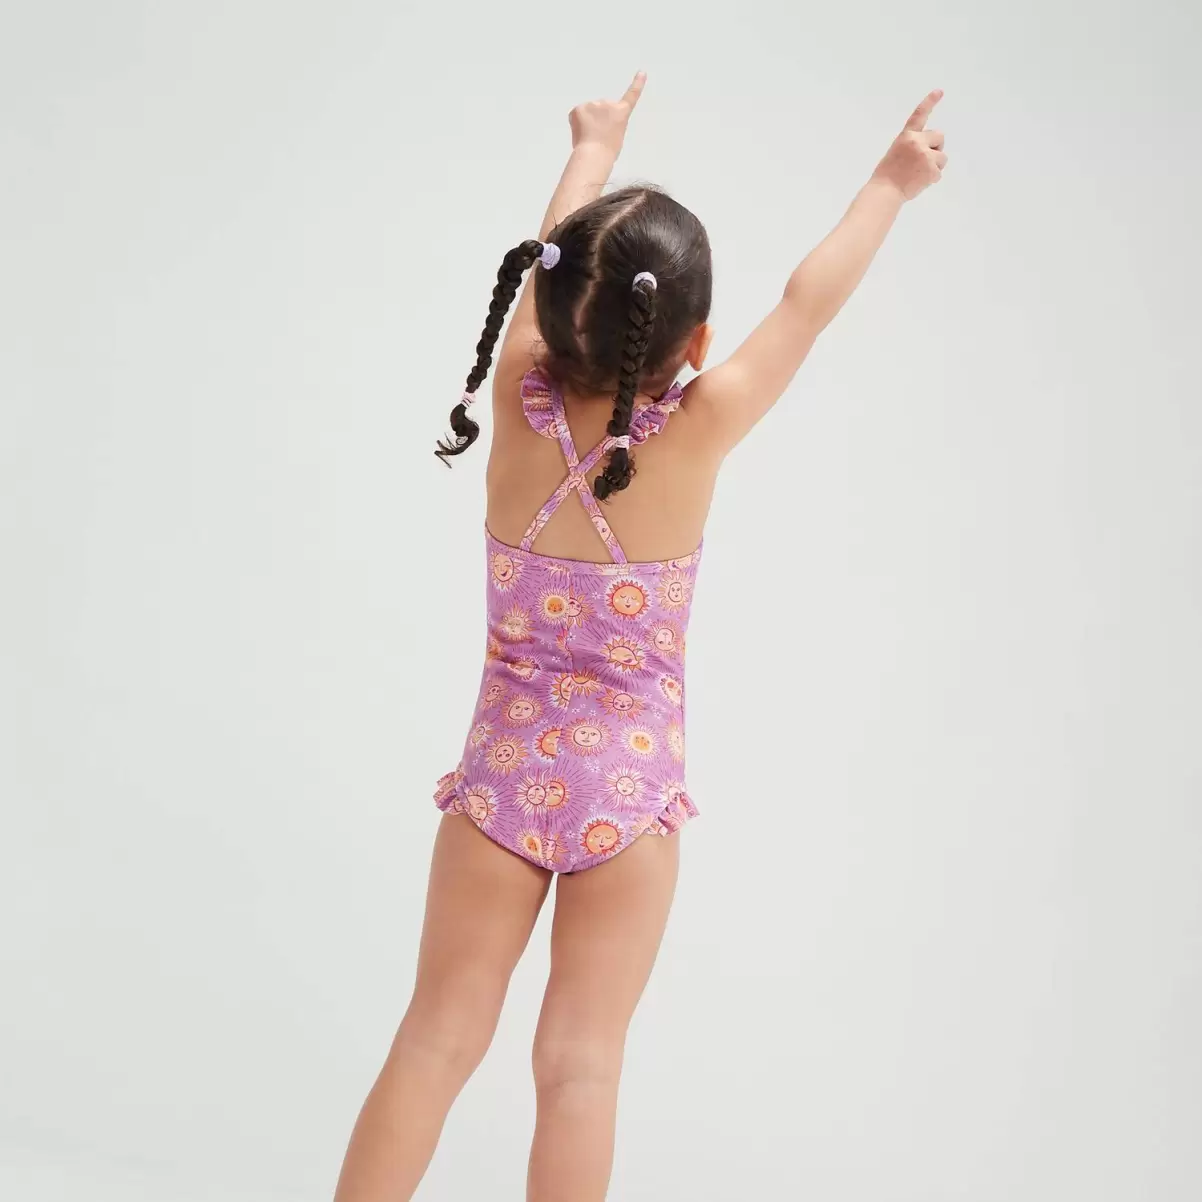 Kinder Mädchen Bademode Speedo Digital-Rüschen-Badeanzug Mit Dünnen Trägern Für Mädchen Im Kleinkindalter Violett/Pink - 1